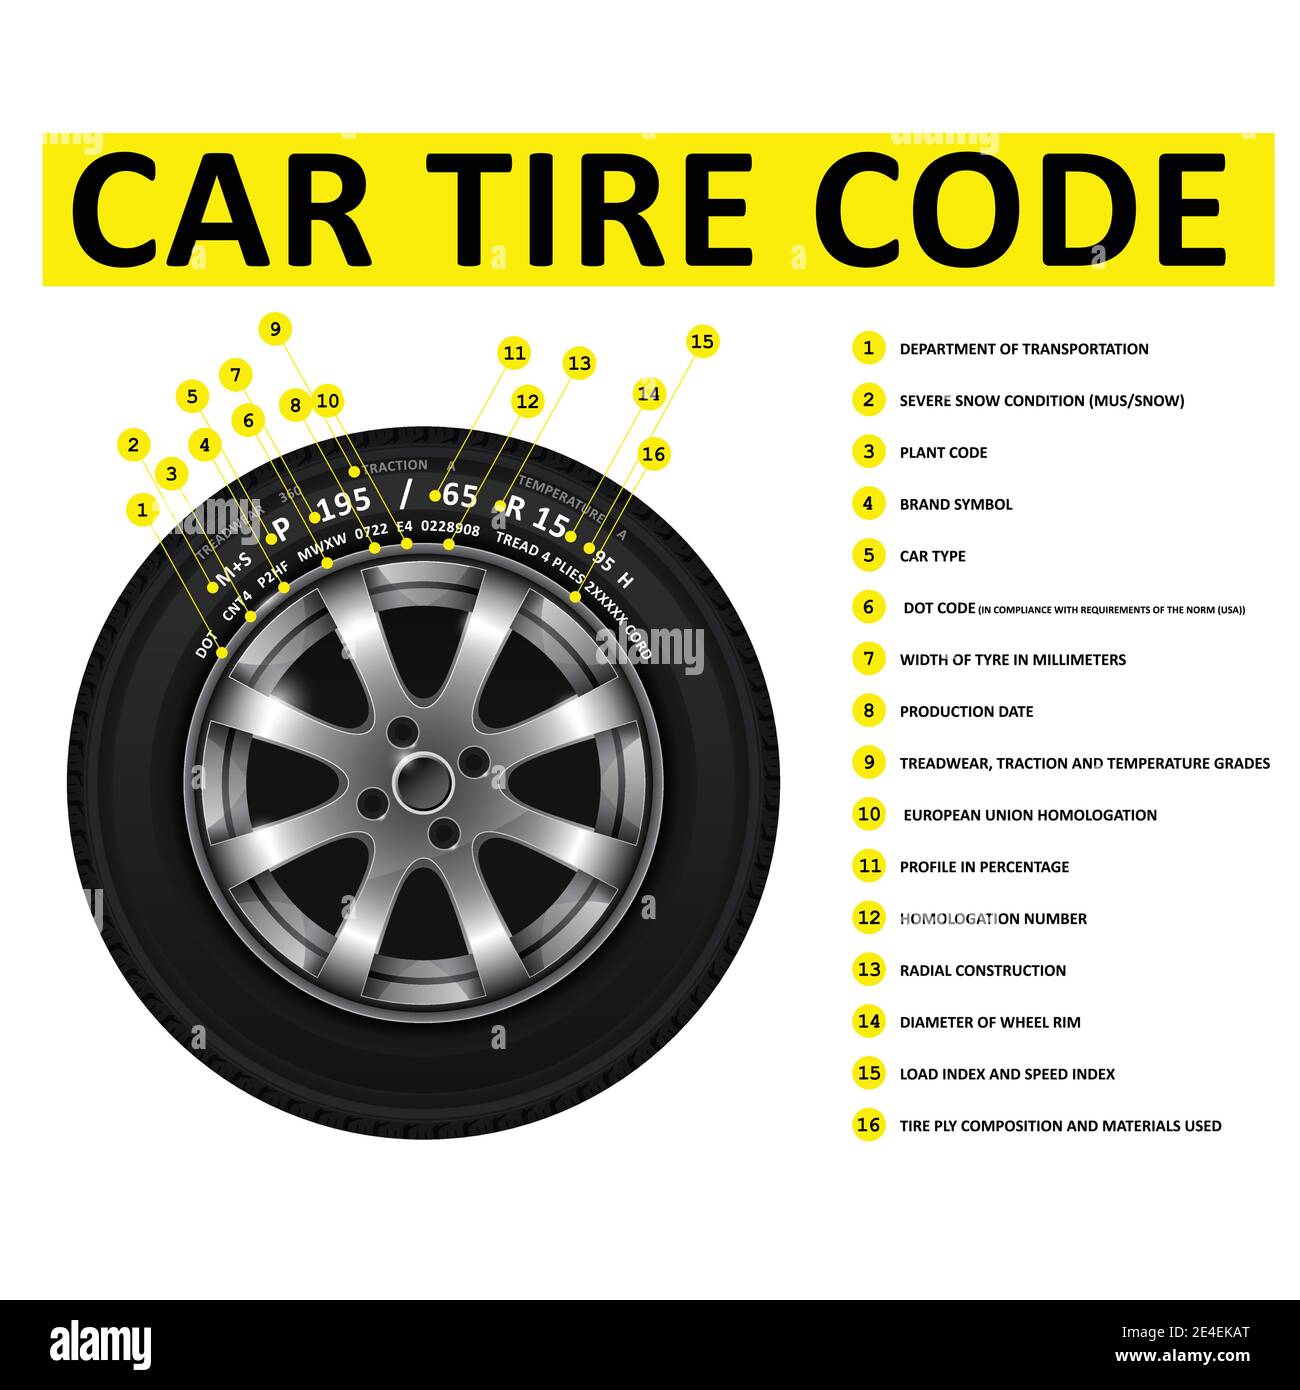 Autoreifen-Code-Entschlüsselung, Kennzeichnung von Reifen, Nomenklatur von Radreifen, Größe, Radmaße und Bauart Informationen, Vektor Stock Vektor